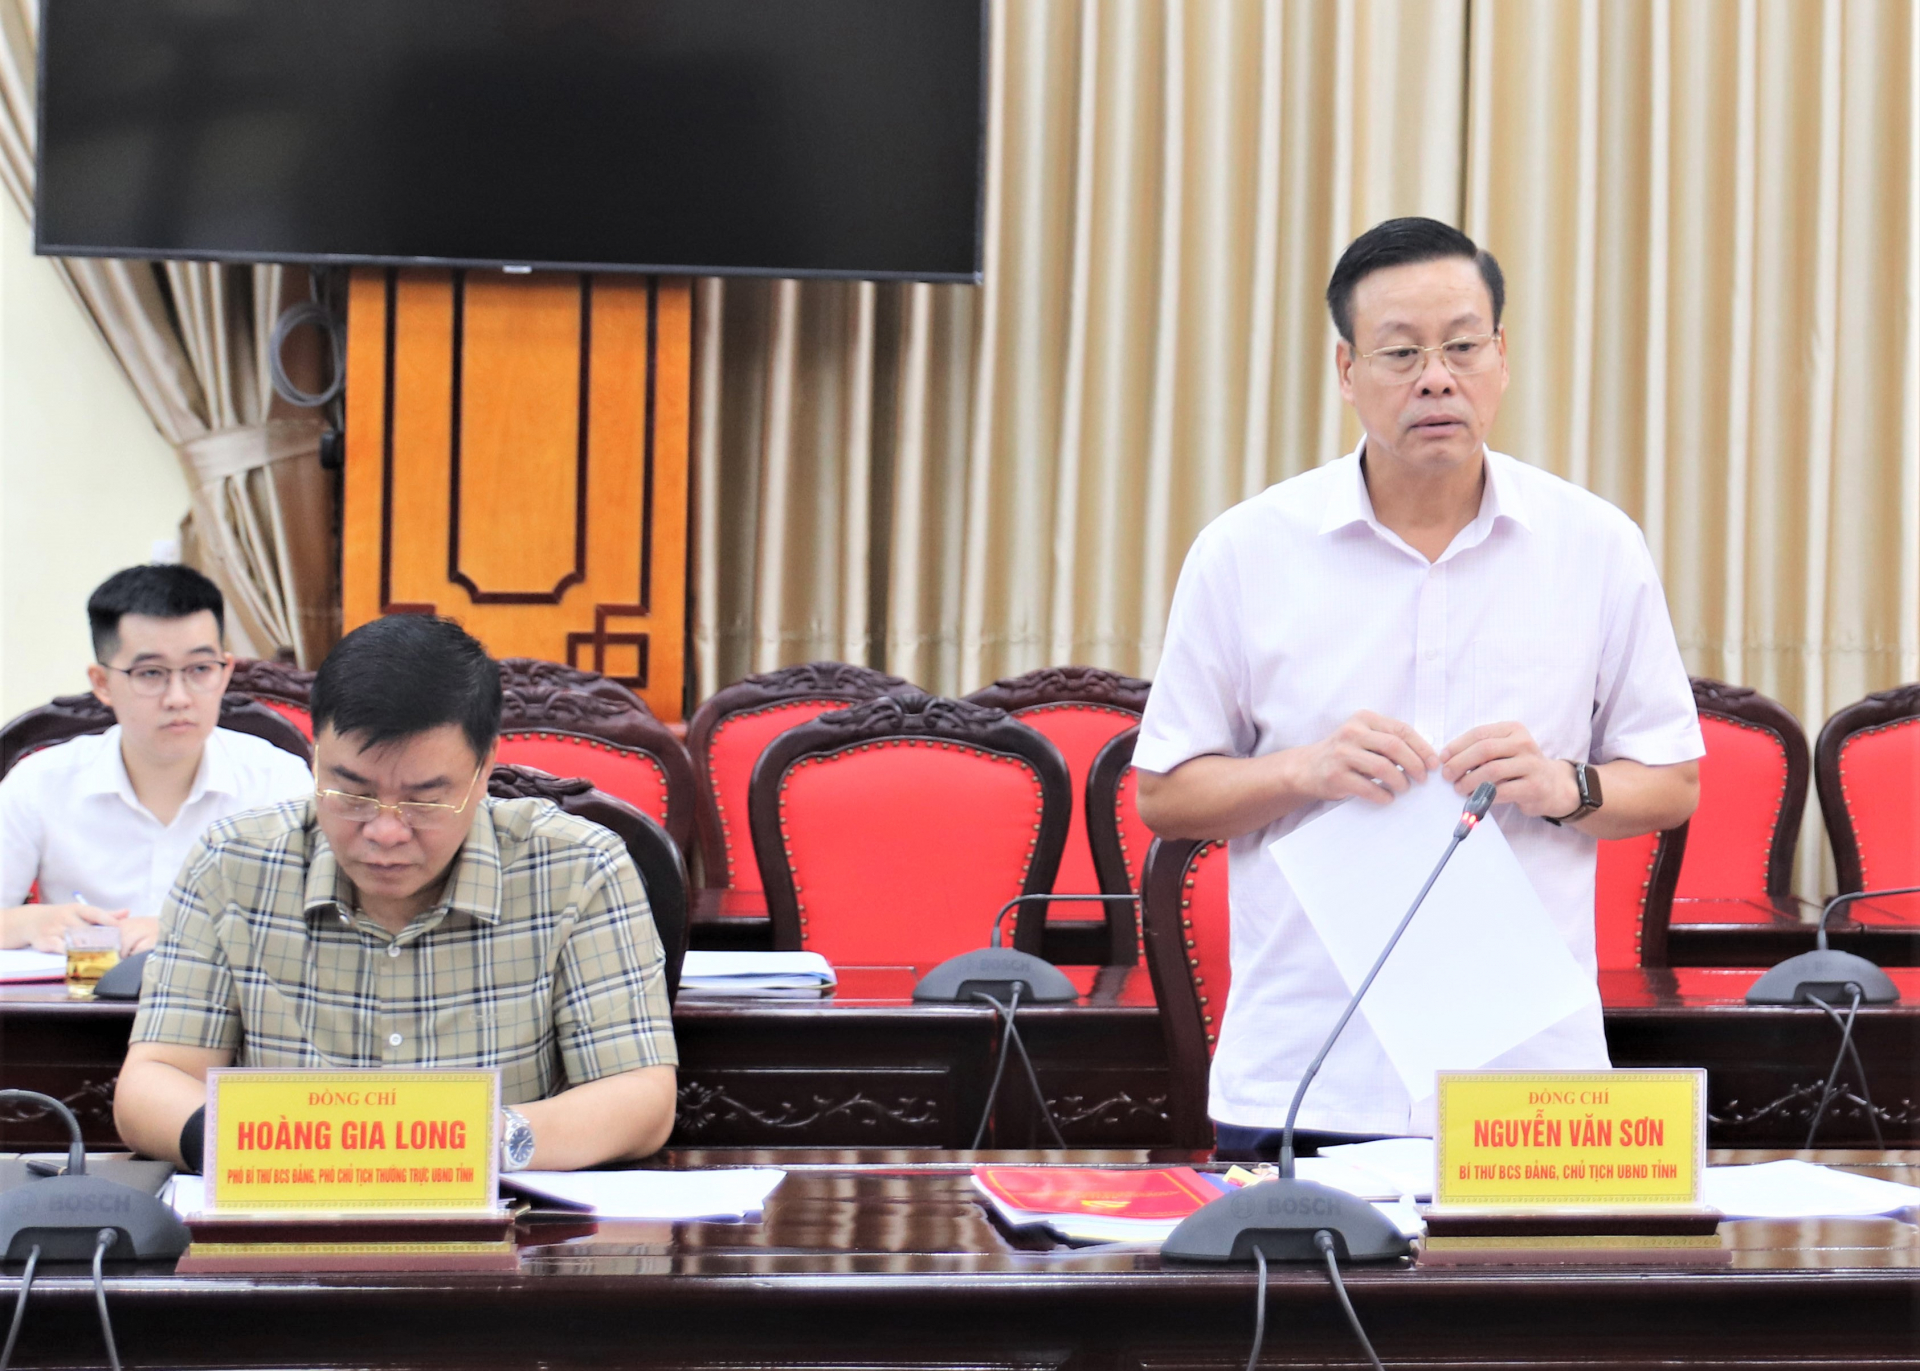 Chủ tịch UBND tỉnh Nguyễn Văn Sơn báo cáo công tác lãnh đạo, chỉ đạo và tổ chức thực hiện công tác cán bộ theo các nghị quyết của Đảng.